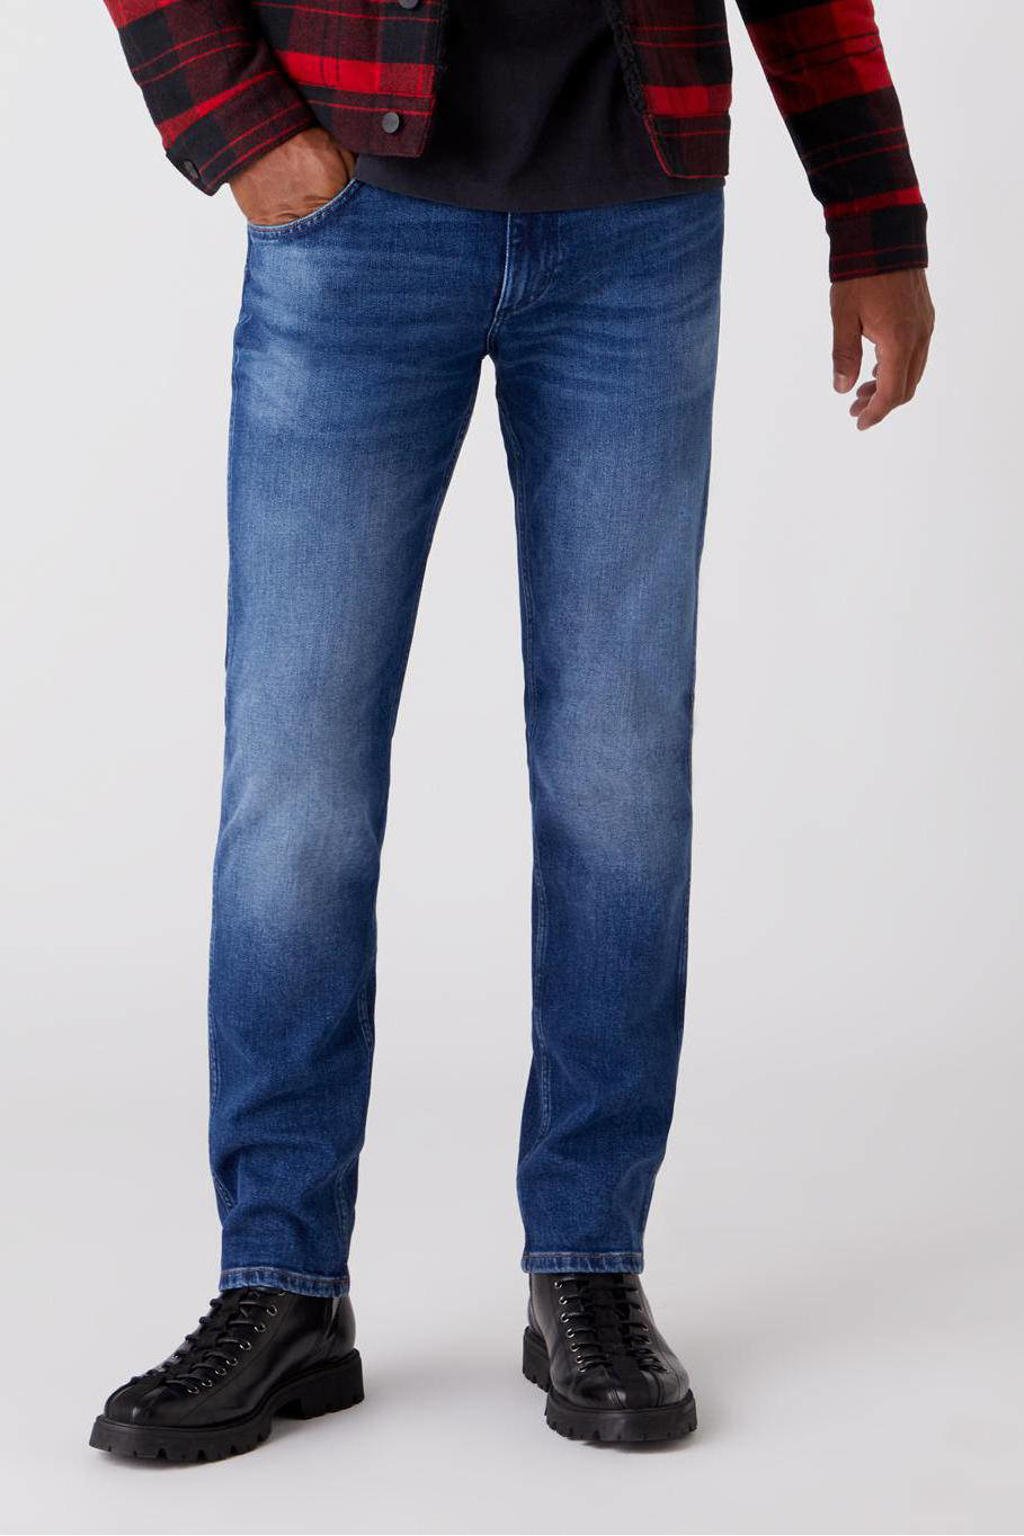 Wrangler regular fit jeans Greenboro hard edge